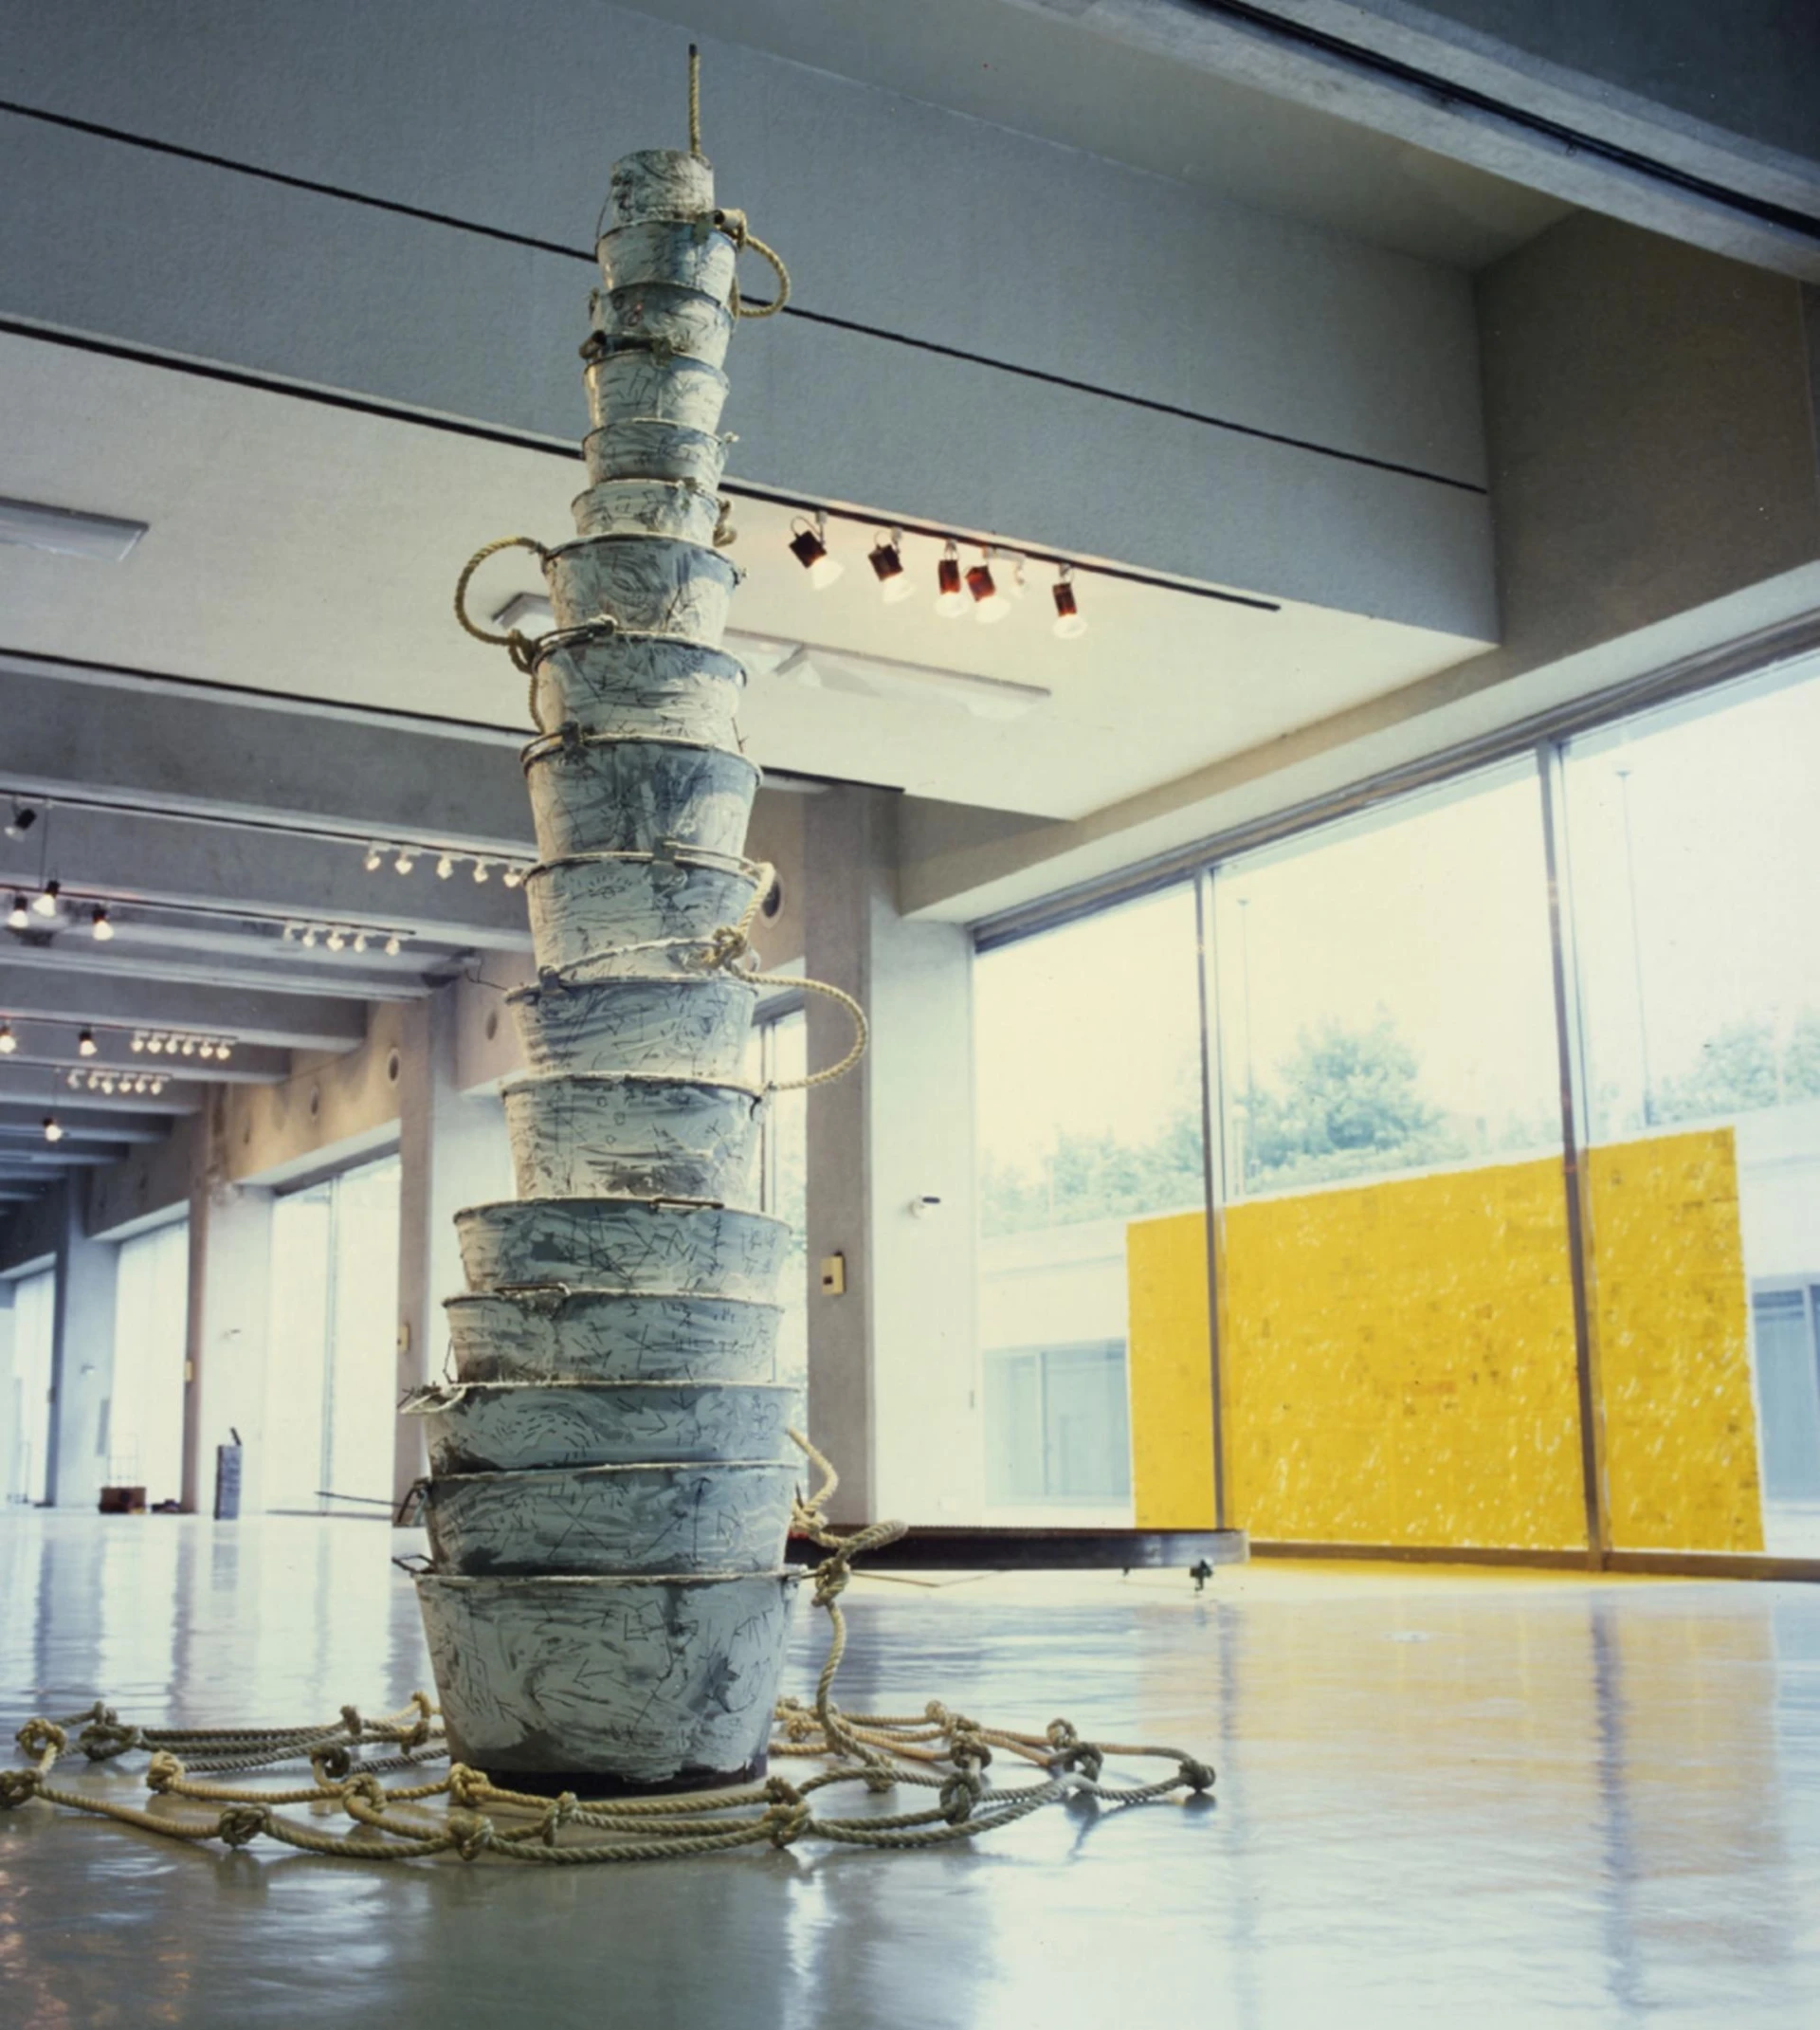 莊普，《精神之塔》，1990，複合媒材裝置；北美館個展「軀體與靈魂之空間」展場一景 ©台北市立美術館-圖片